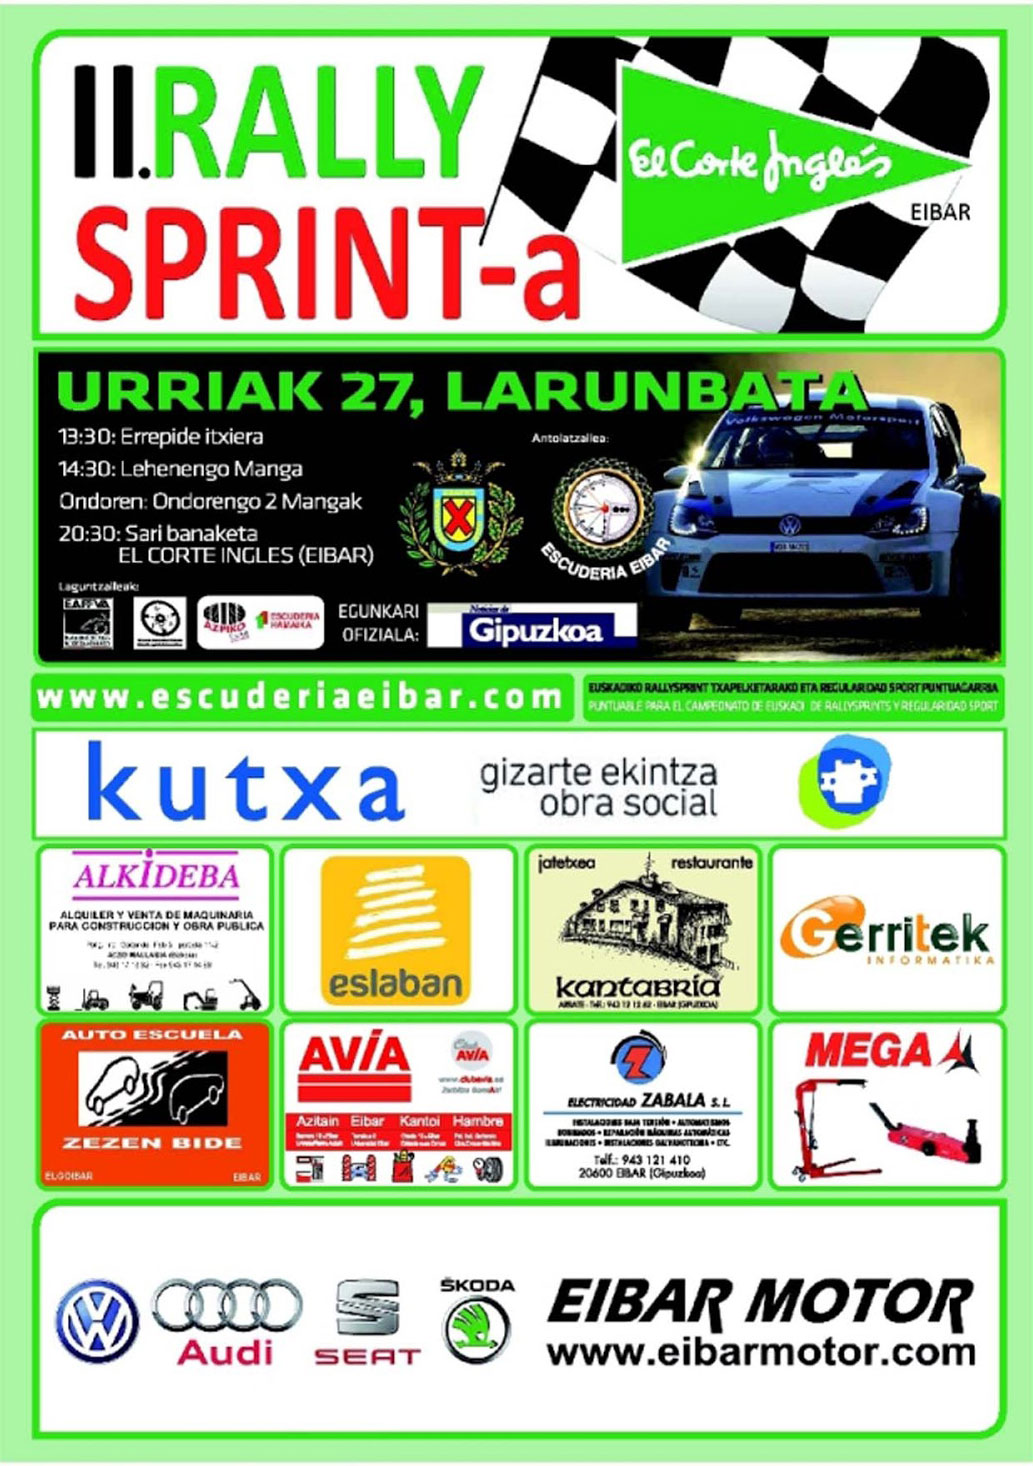 II Rally Sprint. Patrocinador